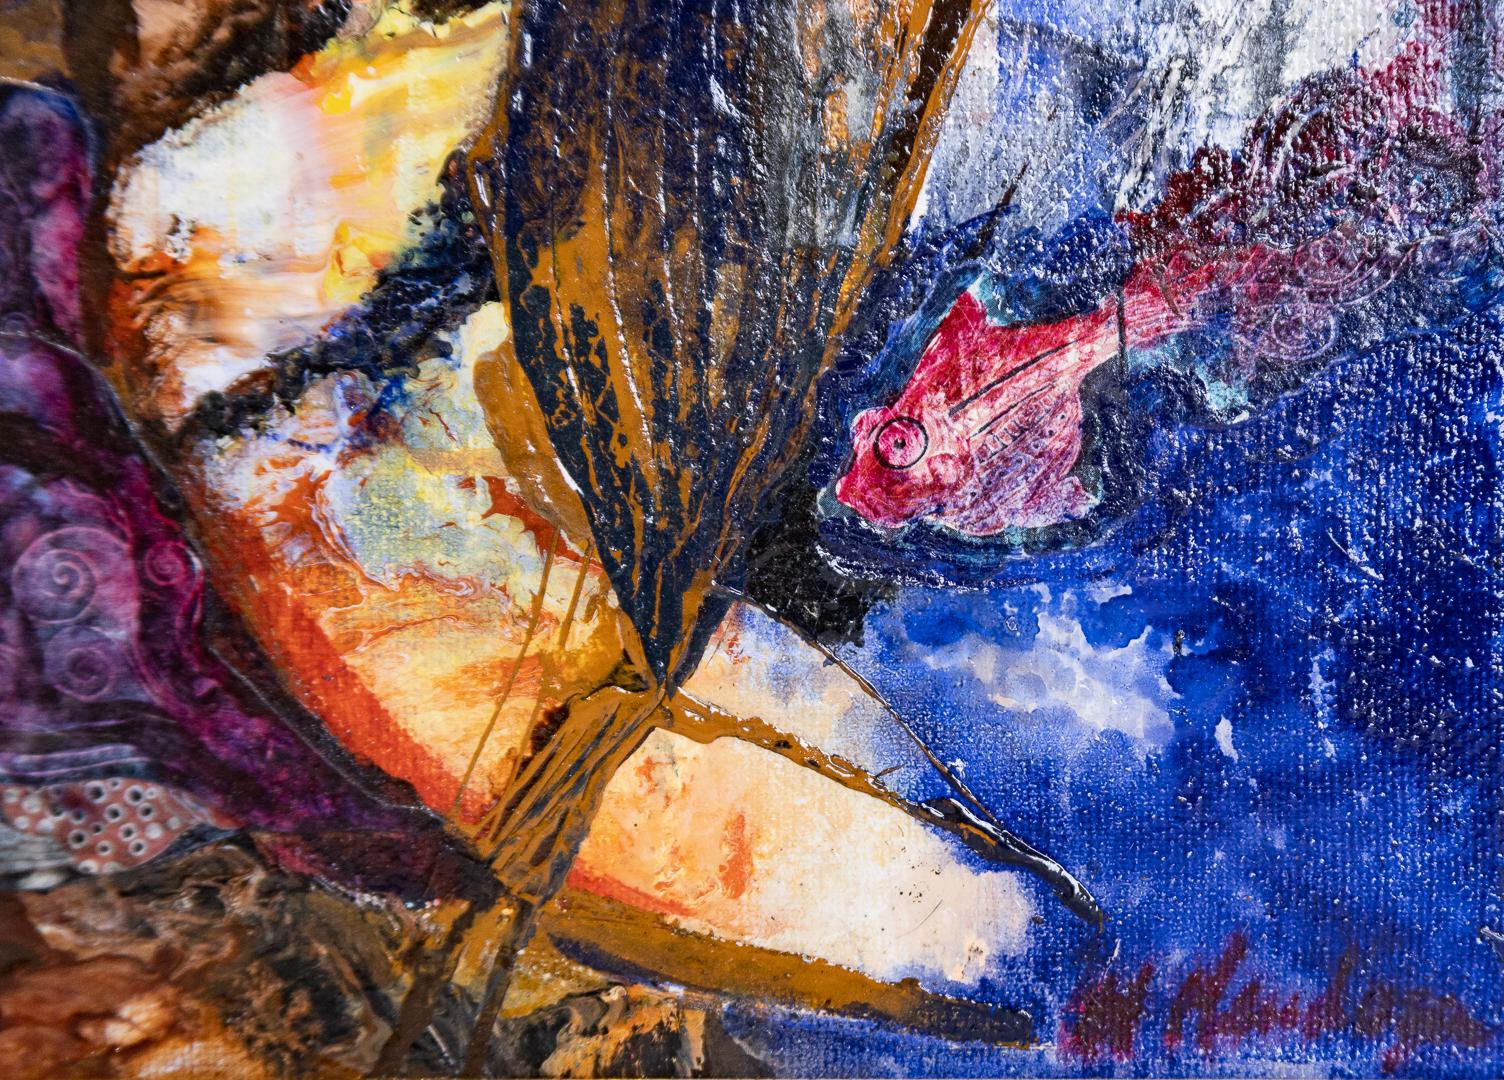 « Untitled », paysage abstrait coloré, huile sur toile, signé par l'artiste - Expressionnisme abstrait Painting par Nora Mendoza